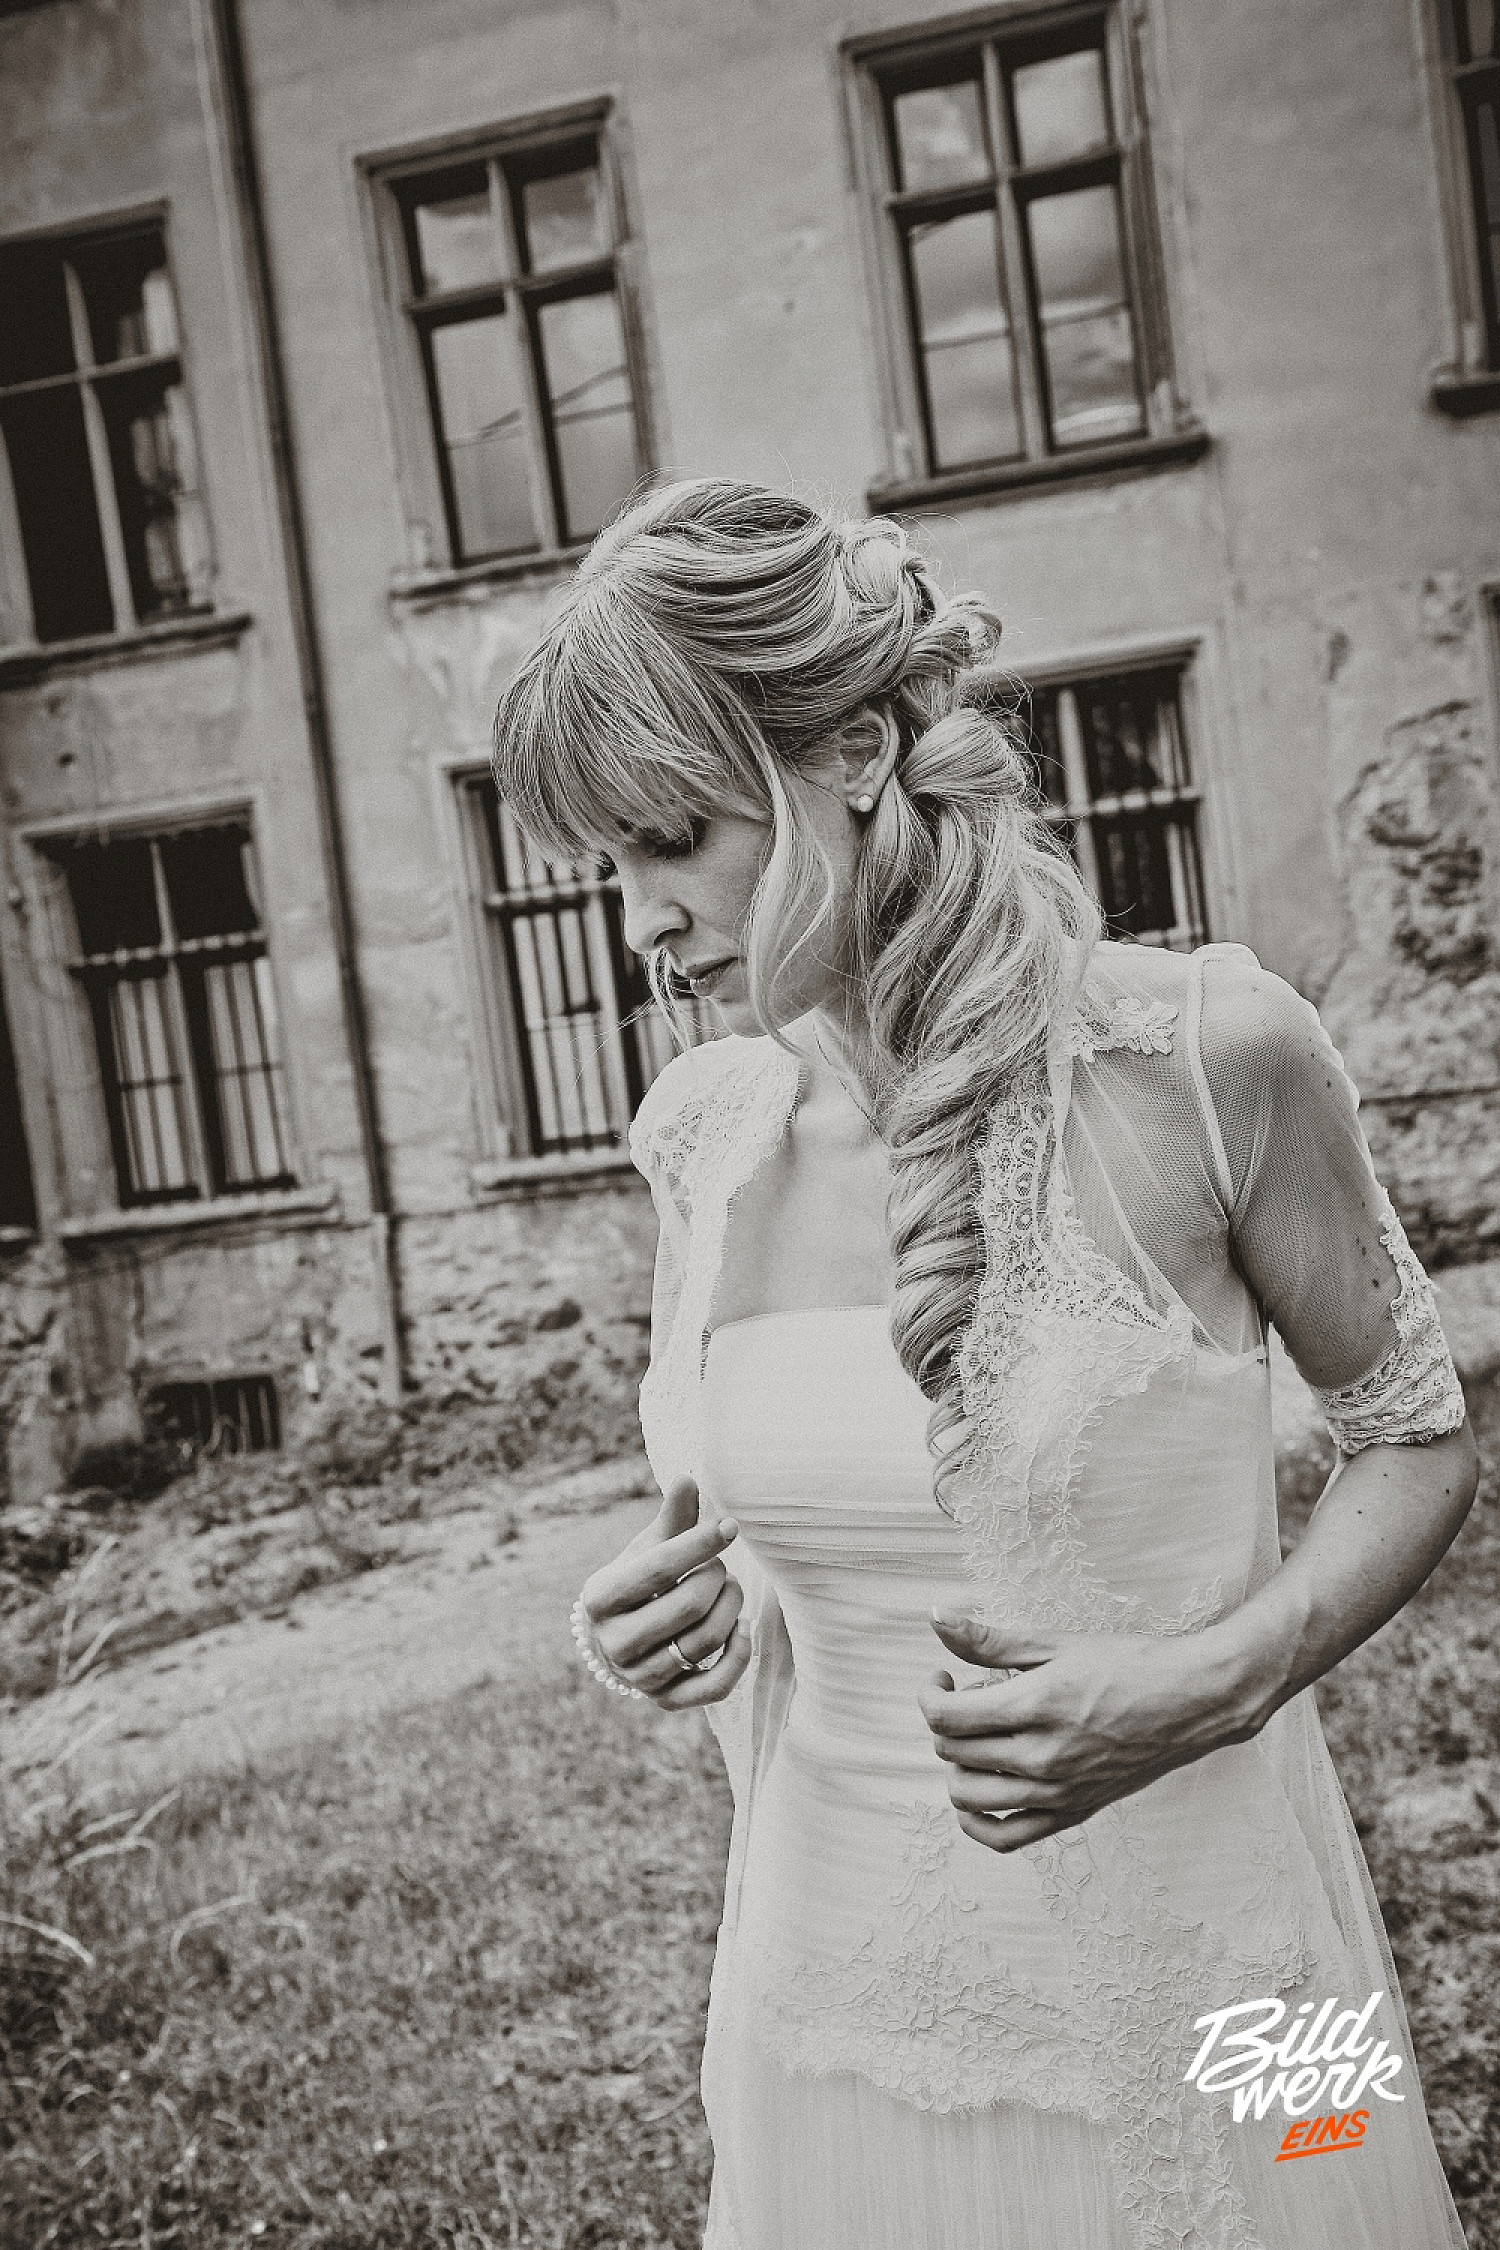 Ein traumhaftes Brautportrait. Hier steht die Braut im Mittelpunkt. Das Bild ist in einem alten Schloss entstanden. Sie trägt ein klassisches weißes Kleid mit Spitze. Sie schaut verträumt zu Boden.